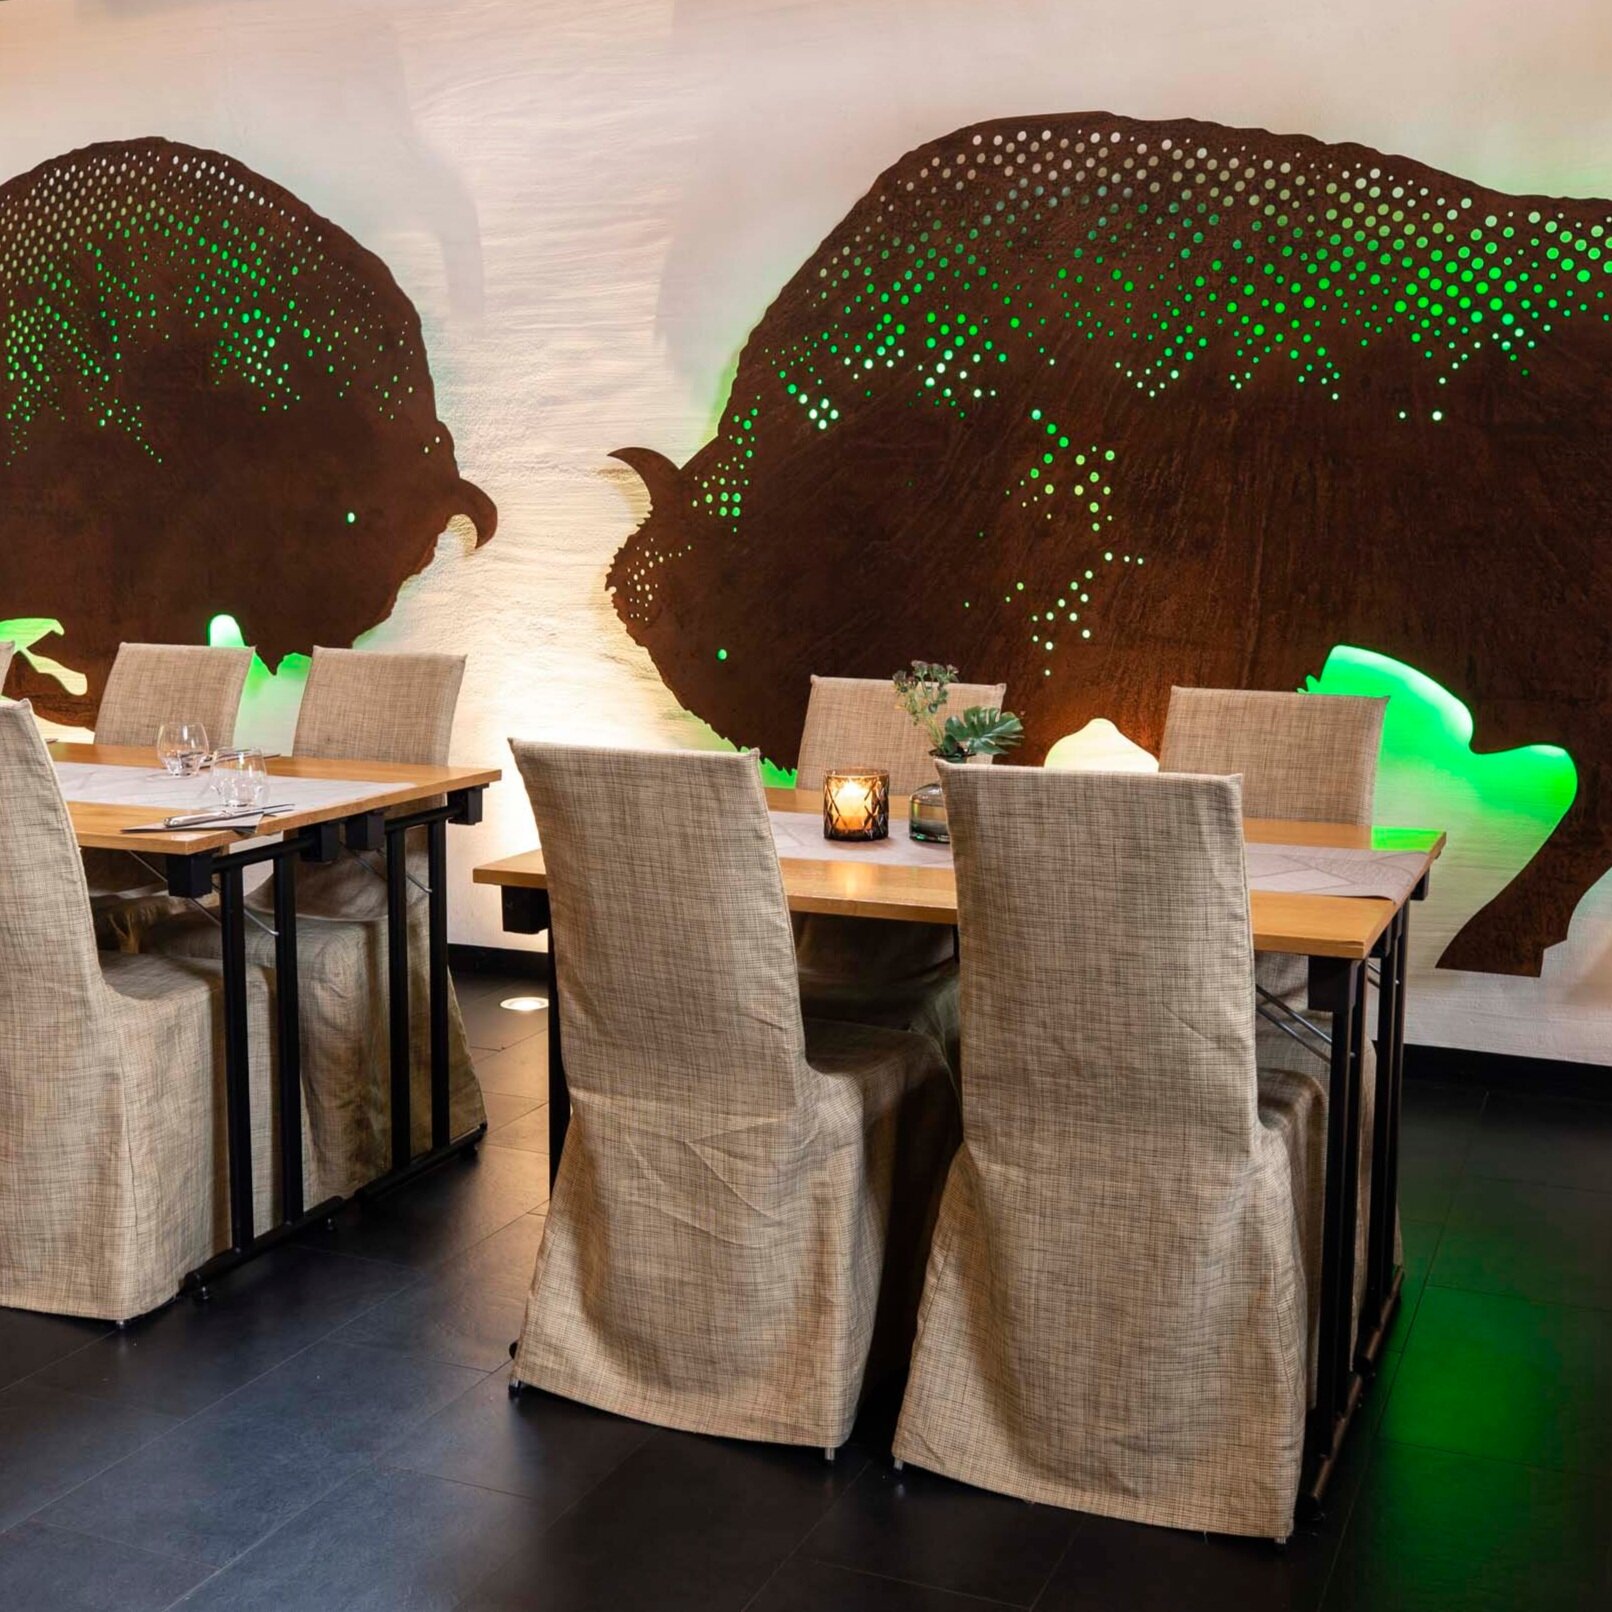 Restaurang-Visenten-Eriksberg_hotell_safaripark-Blekinge-009-2500px.jpg